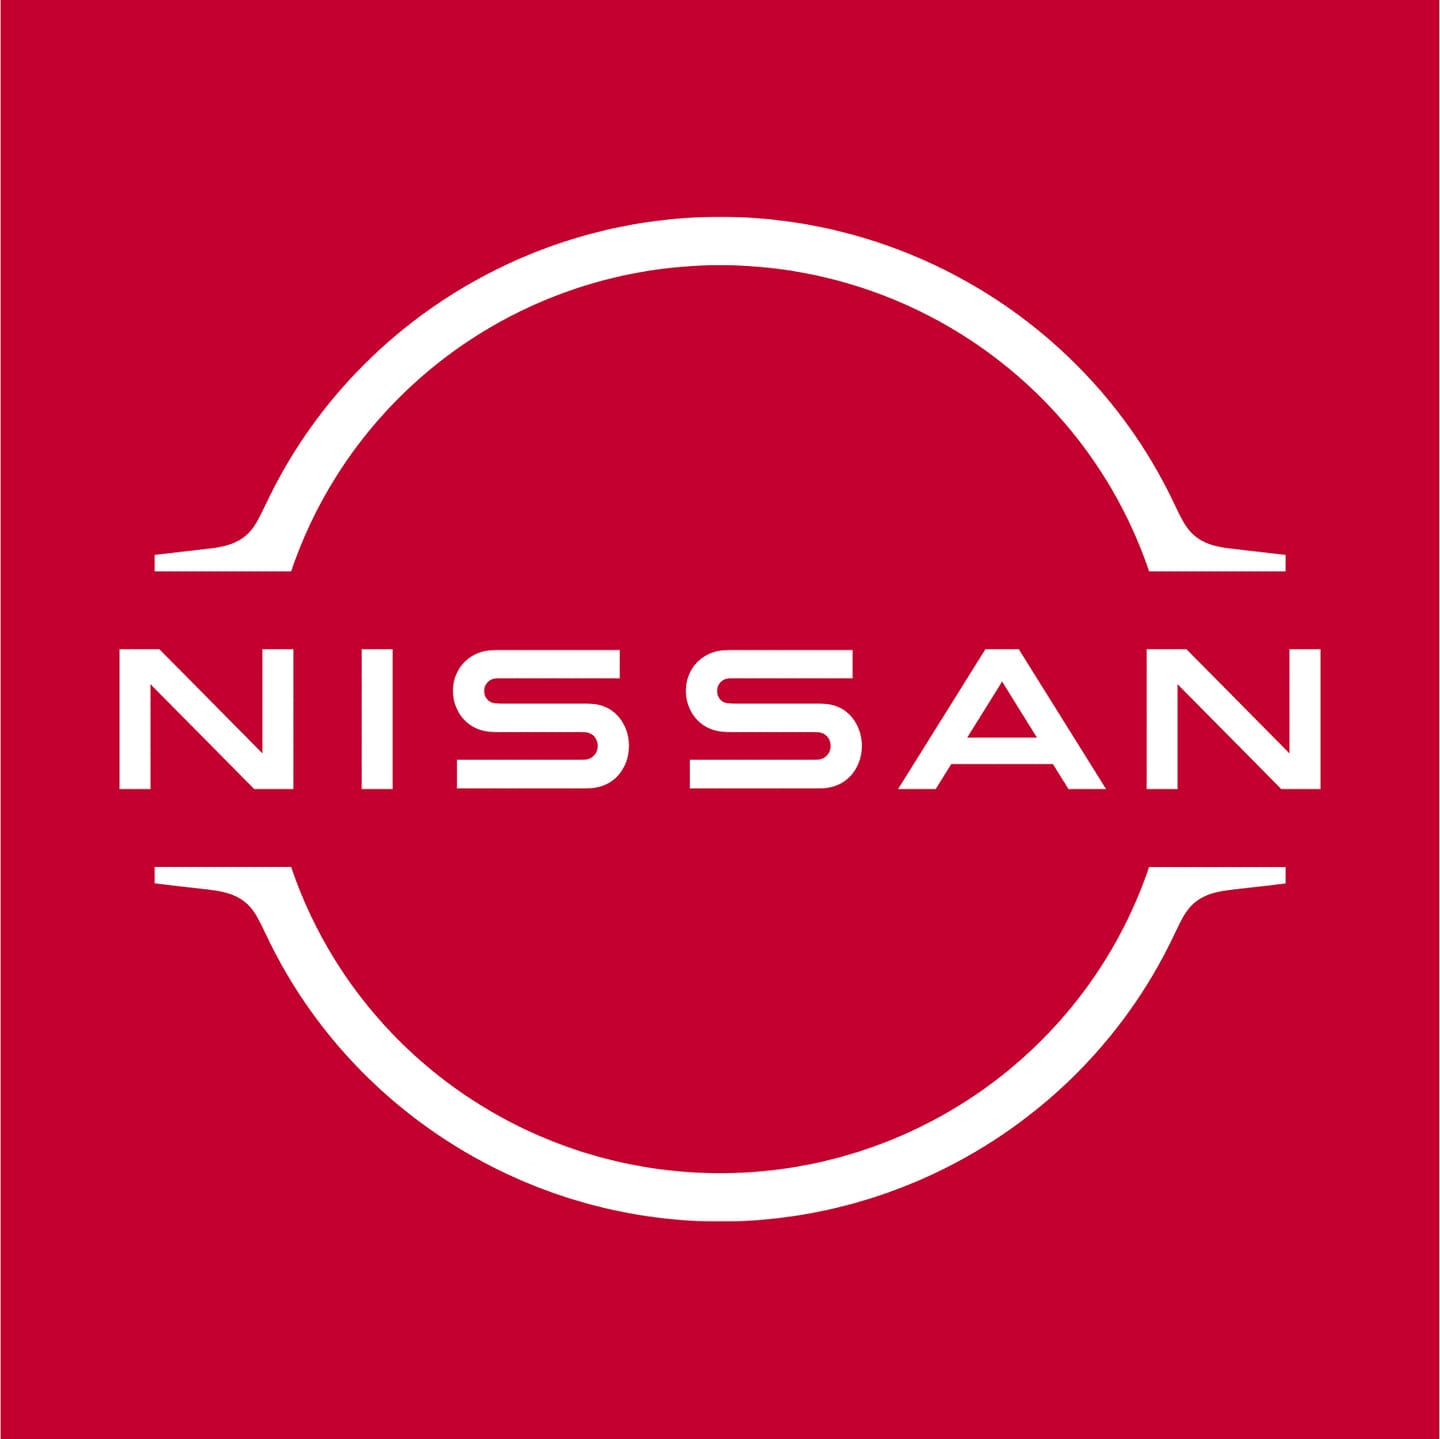 PRAMUKH NISSAN - Logo